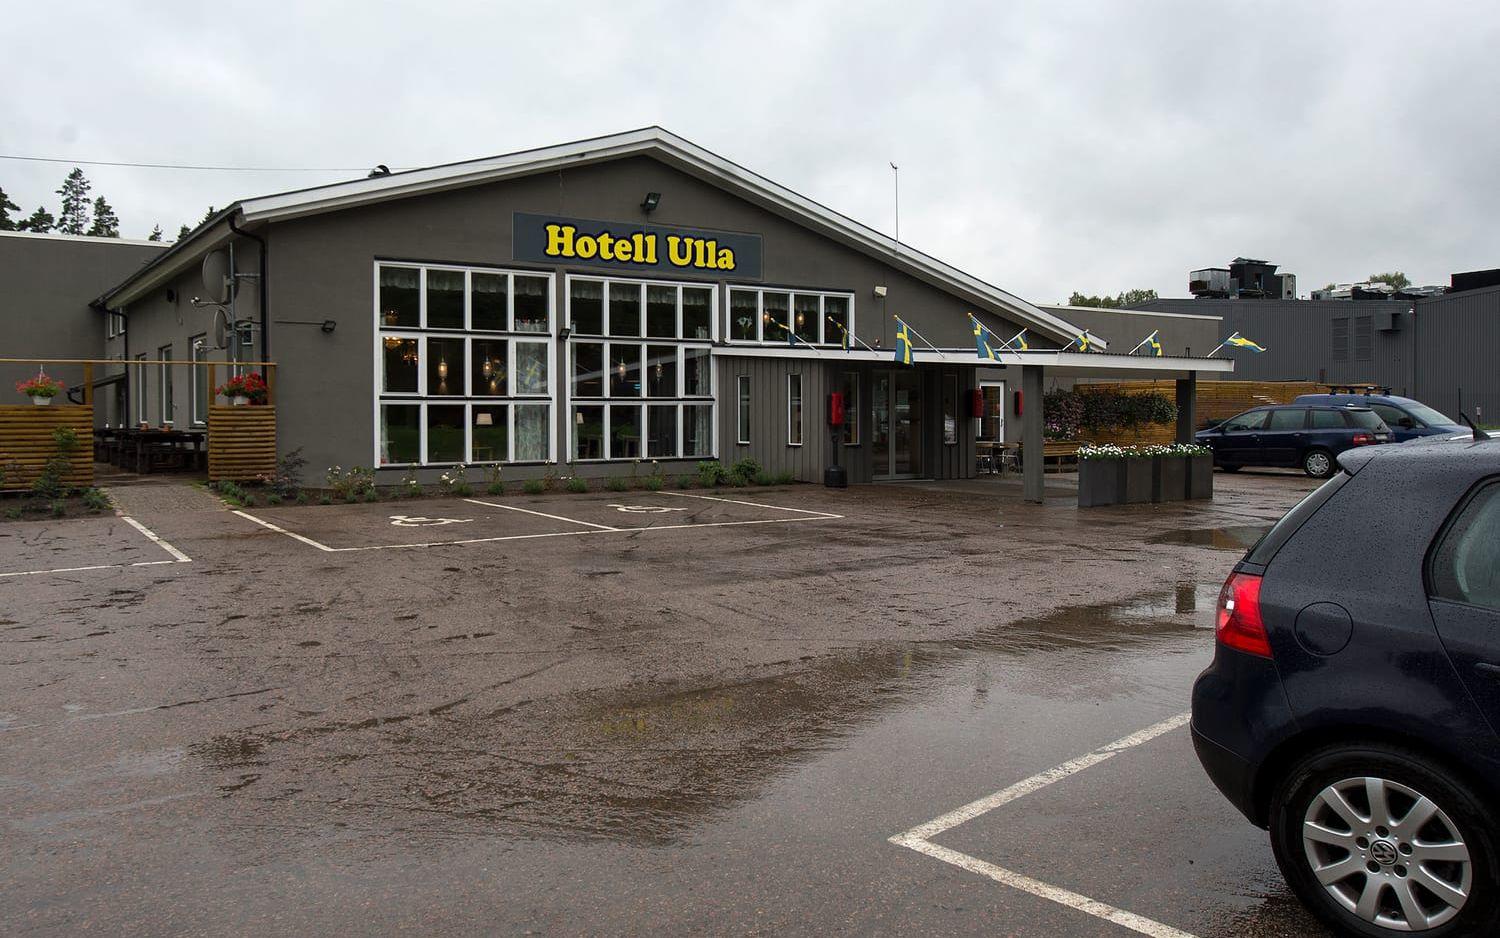 Hotell Ullas ägare Pierre Heramb slipper en process mot Gekås. Bild: Ola Folkesson